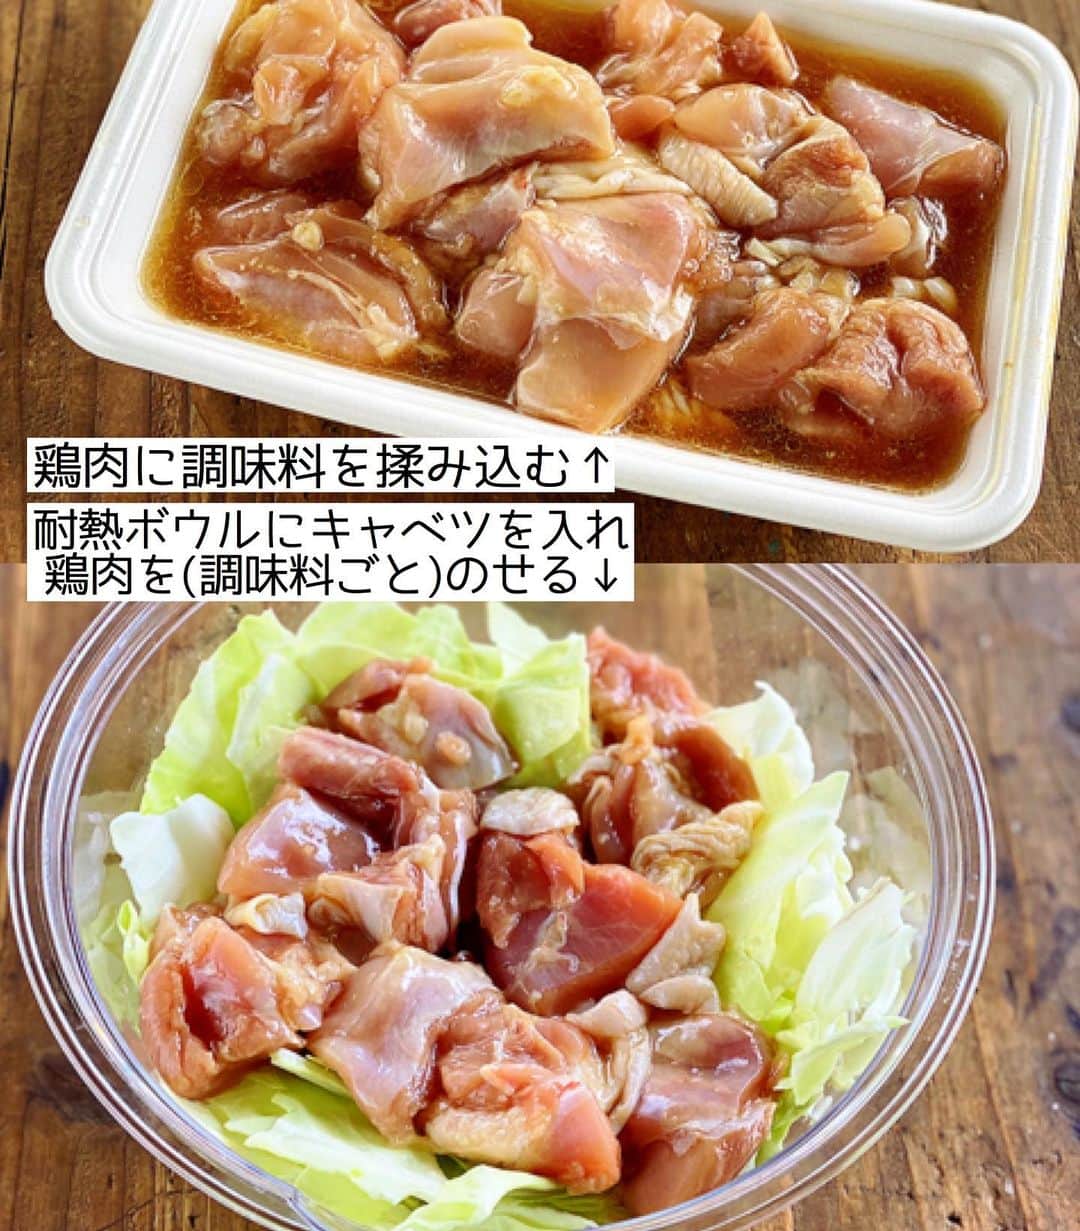 Mizuki【料理ブロガー・簡単レシピ】さんのインスタグラム写真 - (Mizuki【料理ブロガー・簡単レシピ】Instagram)「・﻿ 【レシピ】ーーーーーーーーーーーーーーー﻿ レンジde簡単！鶏肉とキャベツのうま塩煮﻿ ーーーーーーーーーーーーーーーーーーーー﻿ ﻿ ﻿ ﻿ おはようございます(*^^*)﻿ ﻿ 今日はレンチンレシピ♡﻿ ［鶏肉とキャベツのうま塩煮］を﻿ ご紹介させていただきます♩﻿ ジューシーな鶏肉はもちろん﻿ 旨味満点のスープを吸ったキャベツが﻿ 最高に美味しいですよ〜(*´艸`)﻿ (レンジで作ったと言わなければ﻿ きっときっとバレません😂㊙︎)﻿ ﻿ ボウルひとつでできるので﻿ お気軽にお試し下さいね(*^^*)﻿ ﻿ ﻿ ﻿ ーーーーーーーーーーーーーーーーーーーー﻿ 【2人分】﻿ 鶏もも肉...1枚(250g)﻿ キャベツ...1/5個(200g)﻿ ●水...50ml﻿ ●鶏がらスープ・醤油・ごま油...各小1﻿ ●にんにくチューブ...2cm﻿ ごま・粗挽き黒こしょう...各適量﻿ ﻿ 1.鶏肉は3cm大に切って●を揉み込む。耐熱ボウルにキャベツをちぎって入れ、鶏肉をたれごとのせる。﻿ 2.ふんわりラップをかけ、600Wのレンジで7分加熱する。取り出して混ぜ、更に3分加熱して混ぜる。﻿ 3.器に盛り、ごまと粗挽き黒こしょうをかける。﻿ ーーーーーーーーーーーーーーーーーーーー﻿ ﻿ ﻿ ﻿ 《ポイント》﻿ ♦︎キャベツは適当にざっくりちぎればOK♩﻿ ♦︎2回目レンチンする時もふんわりラップをかけて下さい♩ ♦︎辛いのがお好きな方は鷹の爪(小口切り)を加えるのもおすすめです♩﻿ ﻿ ﻿ ﻿ ﻿ ﻿ ﻿ ＿＿＿＿＿＿＿＿＿＿＿＿＿＿＿＿＿﻿ 🎀6刷重版しました🎀﻿ 混ぜて焼くだけ。はじめてでも失敗しない！﻿ 【#ホットケーキミックスのお菓子 】﻿ ﻿ 一冊まるっとホケミスイーツ♩﻿ 普段のおやつから﻿ 特別な日にも使えるレシピを﻿ この一冊に詰め込みました(*^^*)﻿ ホットケーキミックスを使えば﻿ 簡単に本格的なお菓子が作れますよ♡﻿ ＿＿＿＿＿＿＿＿＿＿＿＿＿＿＿＿＿﻿ ﻿ ﻿ ﻿ ＿＿＿＿＿＿＿＿＿＿＿＿＿＿＿＿＿＿＿﻿ 📕6刷重版しました📕﻿ 簡単・時短！ 毎日のごはんがラクになる﻿ ✨🦋 【 #Mizukiの今どき和食 】🦋✨﻿ ＿＿＿＿＿＿＿＿＿＿＿＿＿＿＿＿＿＿＿﻿ なるべく少ない材料で﻿ 手間も時間も省きながら﻿ 簡単にできるおいしい和食レシピ♩﻿ 簡単に失敗なくマスターできる一冊で﻿ もっと気軽に、カジュアルに﻿ 和食を楽しんで下さいね(*^^*)﻿ ＿＿＿＿＿＿＿＿＿＿＿＿＿＿＿＿＿＿＿﻿ ﻿ ⭐️ストーリー、ハイライト、プロフ画面に﻿ 本のURLを貼らせていただいております♩﻿ →(@mizuki_31cafe )﻿ ﻿ ﻿ ﻿ ﻿ ﻿ #レンジ#レンチン#キャベツ#煮物#塩#Mizuki#簡単レシピ#時短レシピ#節約レシピ#料理#レシピ#フーディーテーブル#マカロニメイト#おうちごはん#デリスタグラマー#料理好きな人と繋がりたい#おうちごはん#写真好きな人と繋がりたい#お菓子作りならコッタlover#foodpic#cooking#recipe#lin_stagrammer#foodporn#yummy#鶏肉とキャベツのうま塩煮m」7月22日 7時02分 - mizuki_31cafe